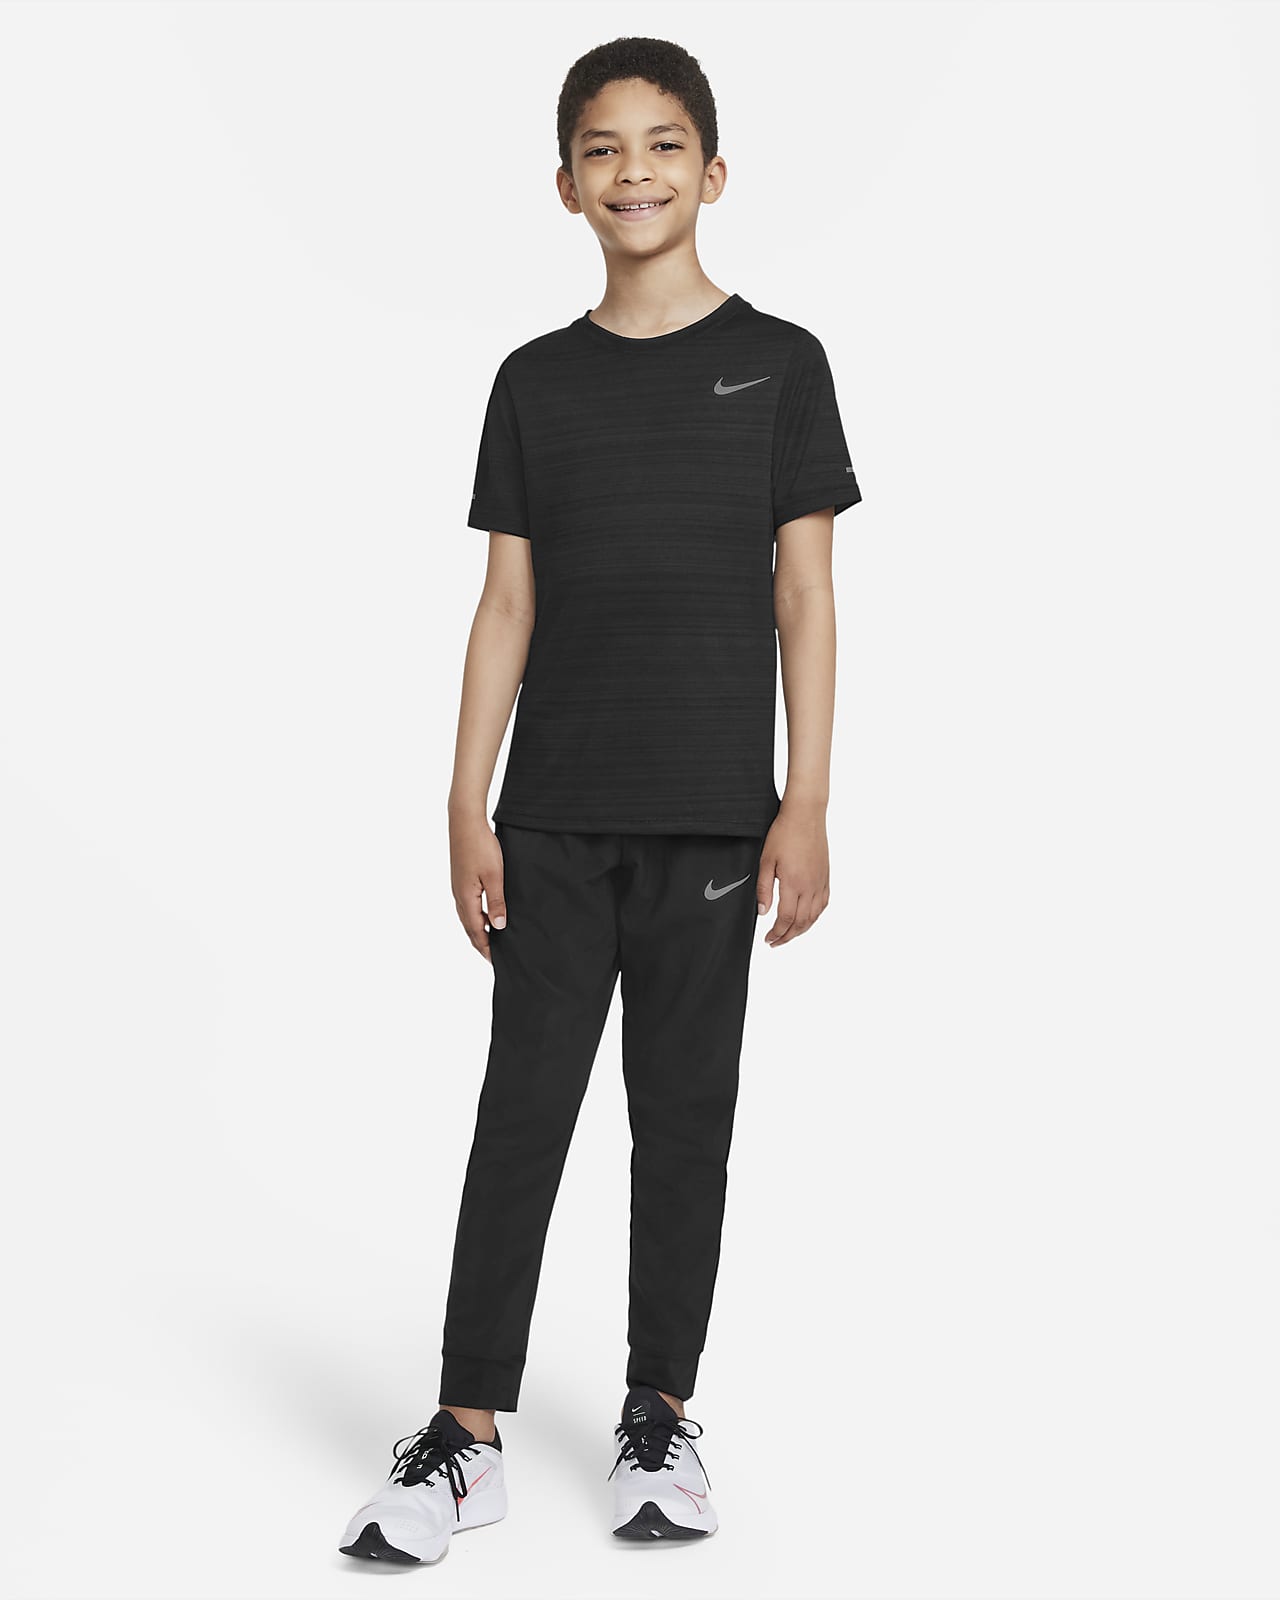 NIKE Girls' Nike Sportswear Club Fleece Jogger Pants | Foxvalley Mall